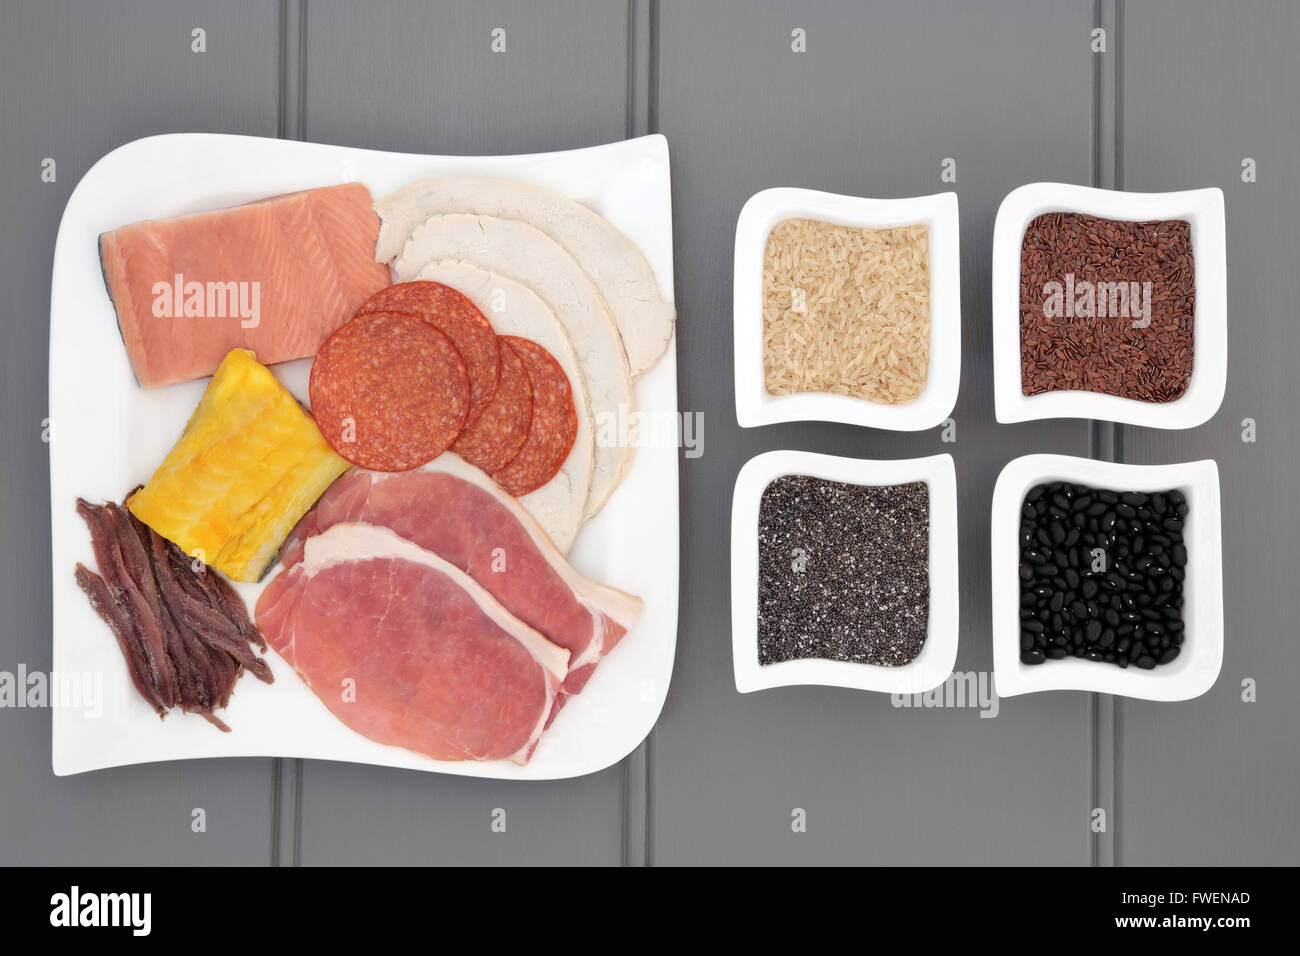 Proteina di elevata salute dieta alimentare di carne, pesce, legumi, cereali e semi. Anche mangiato da body builders. Foto Stock